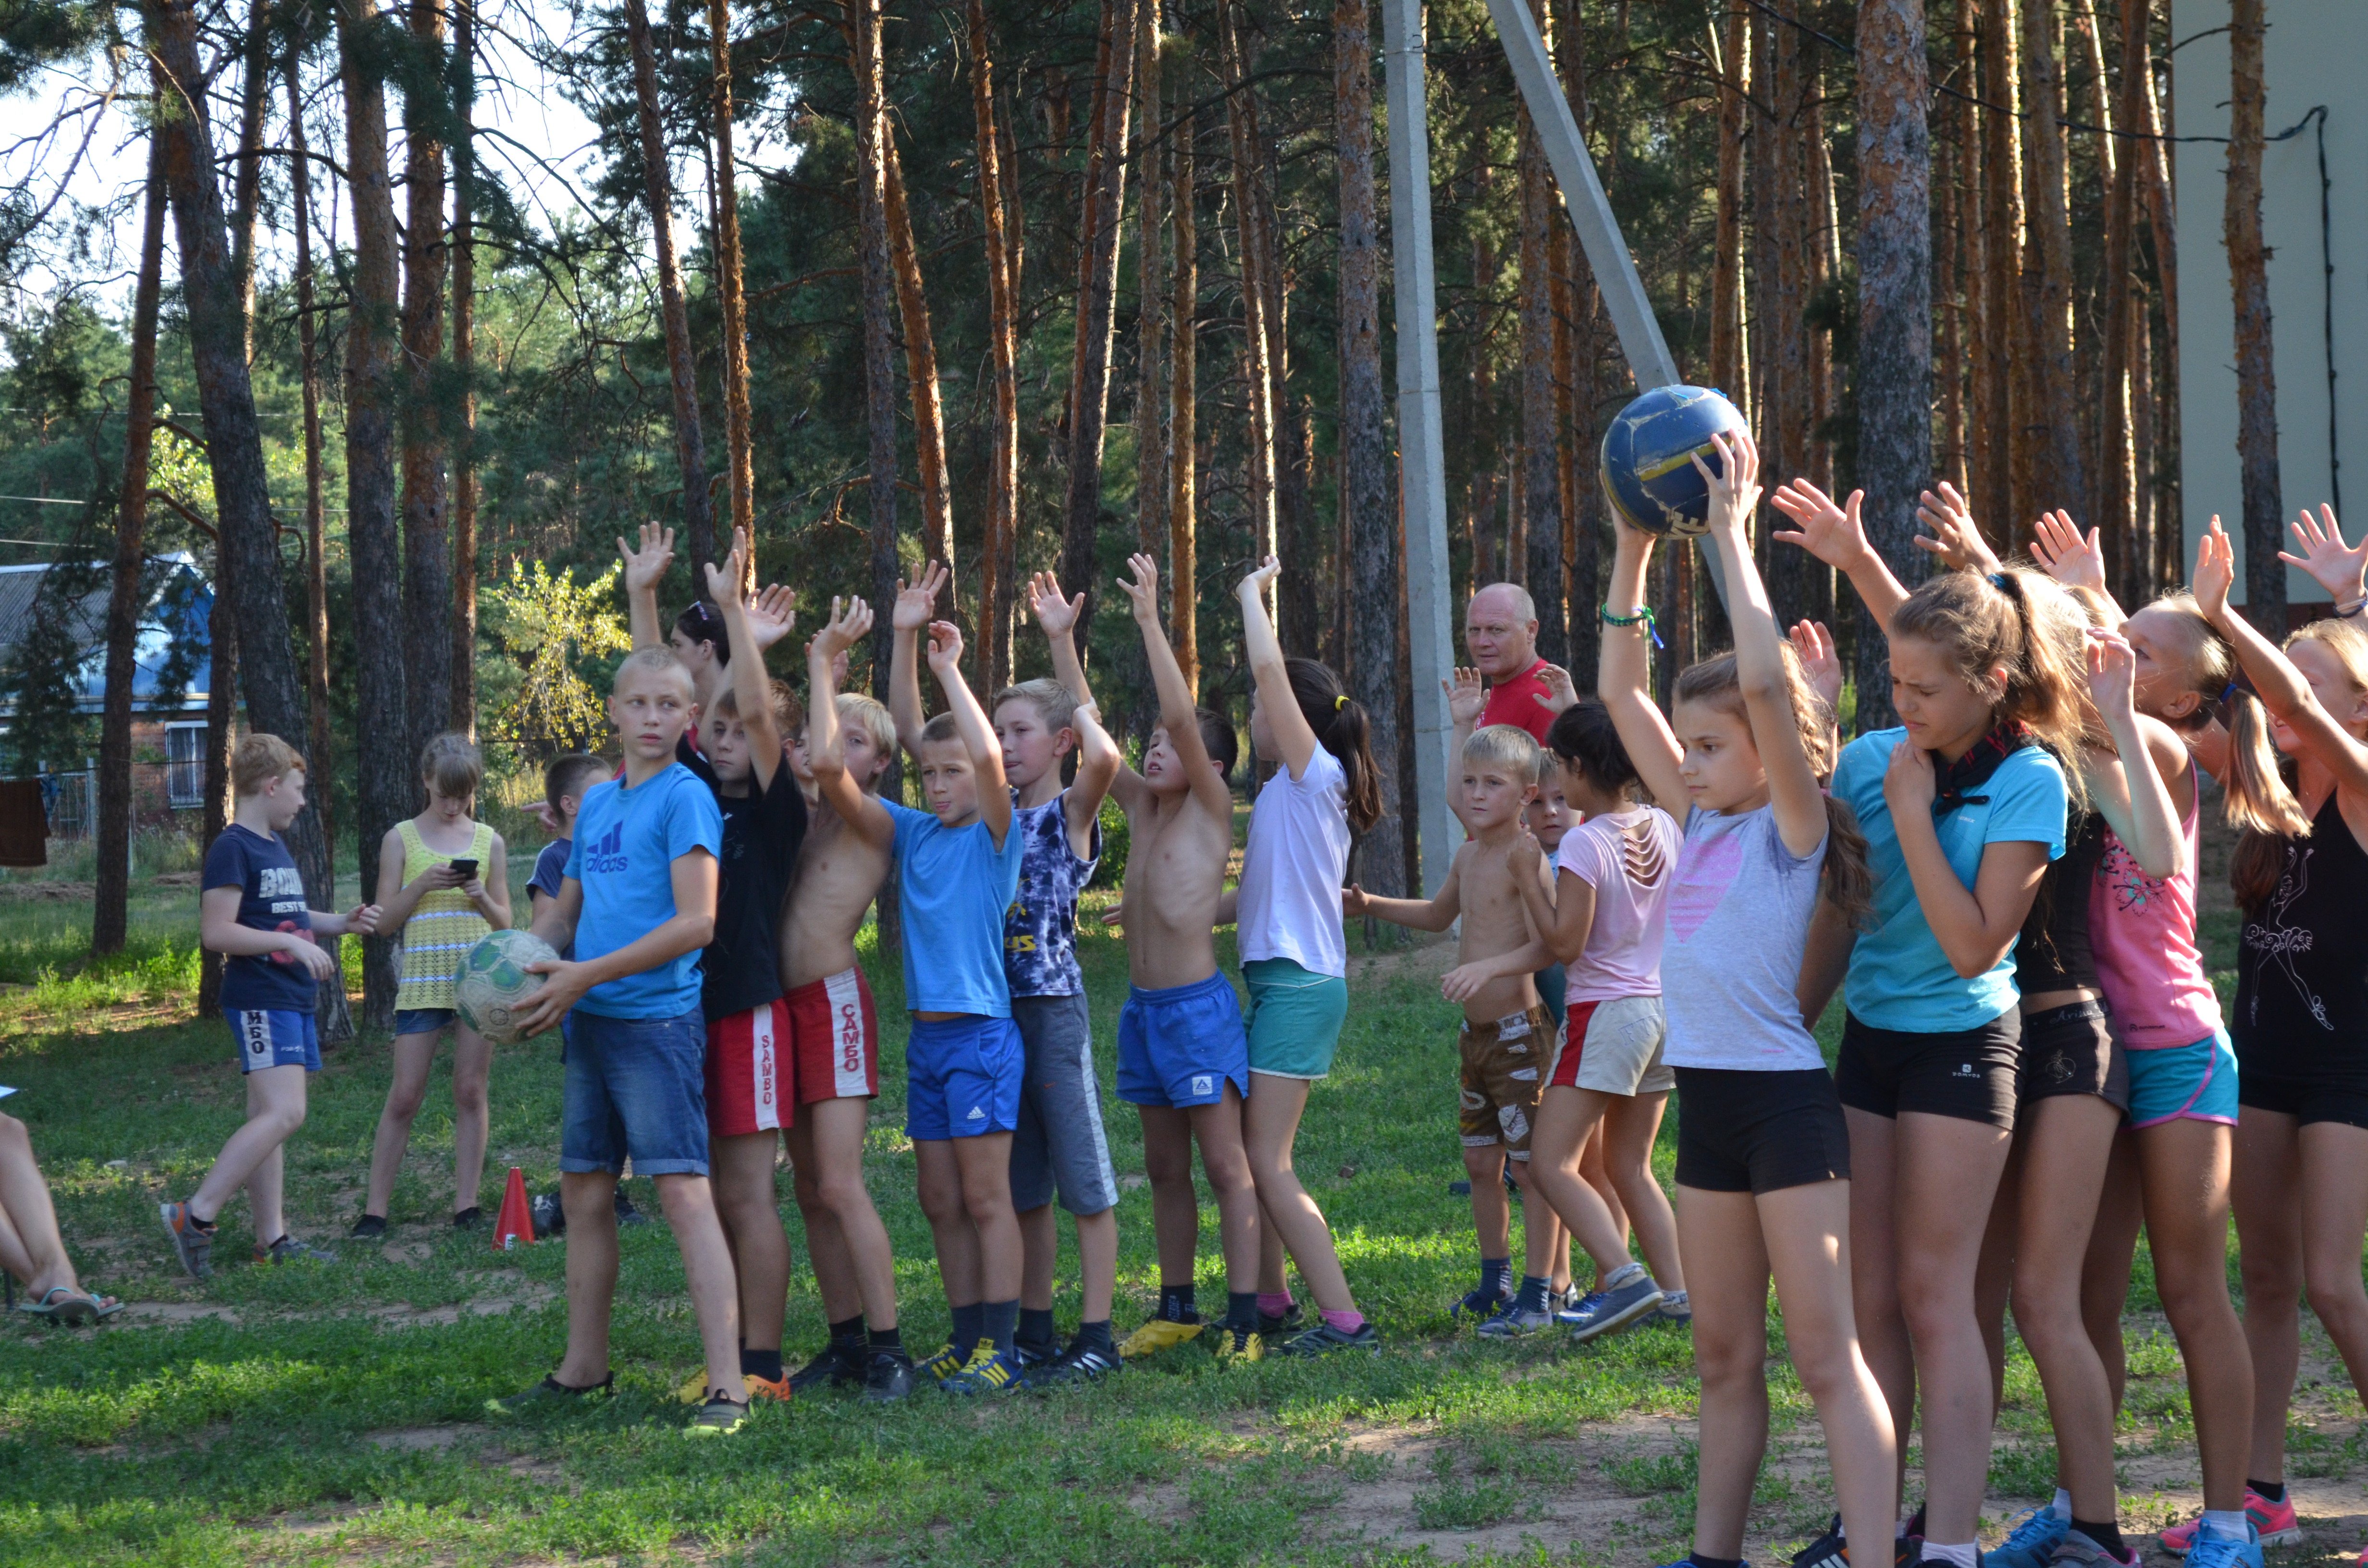 Проходит спортивный лагерь. "Лагерь для перемещённых лиц3" - Подольск. Детский лагерь. Детский спортивный лагерь. Детские оздоровительные лагеря.